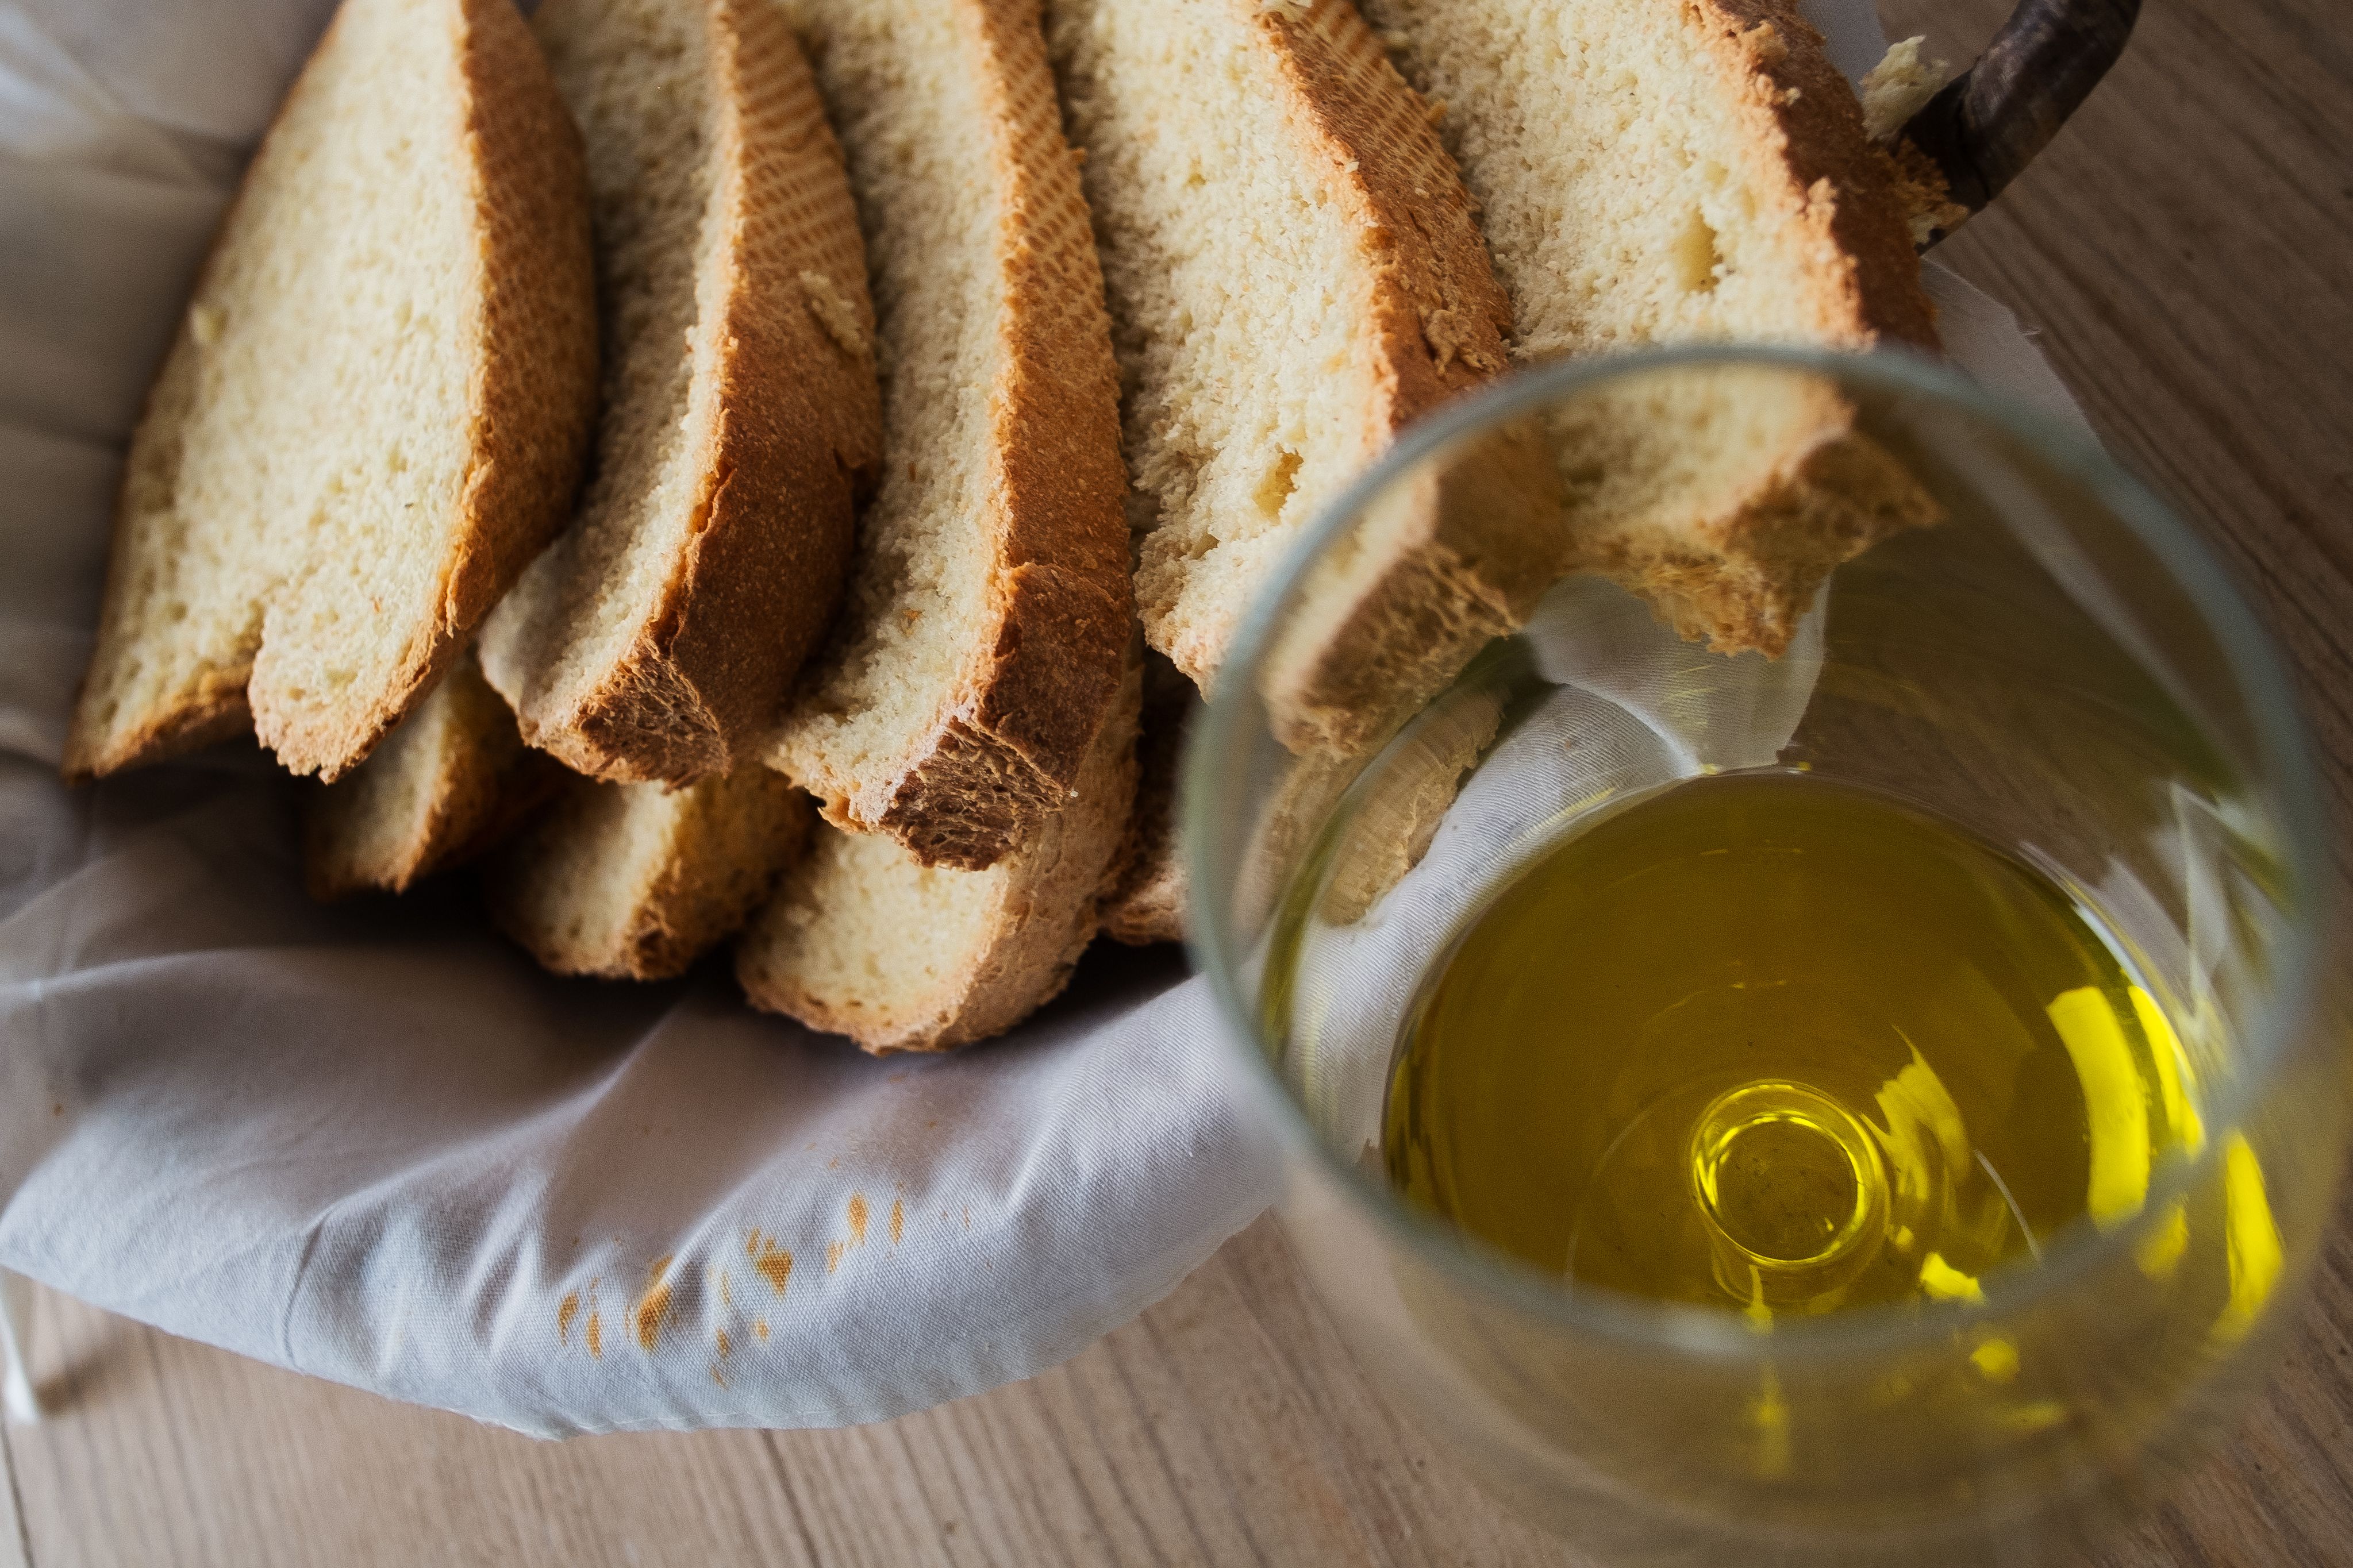 Aceite de oliva, para acompañar un buen desayuno en Andalucía.